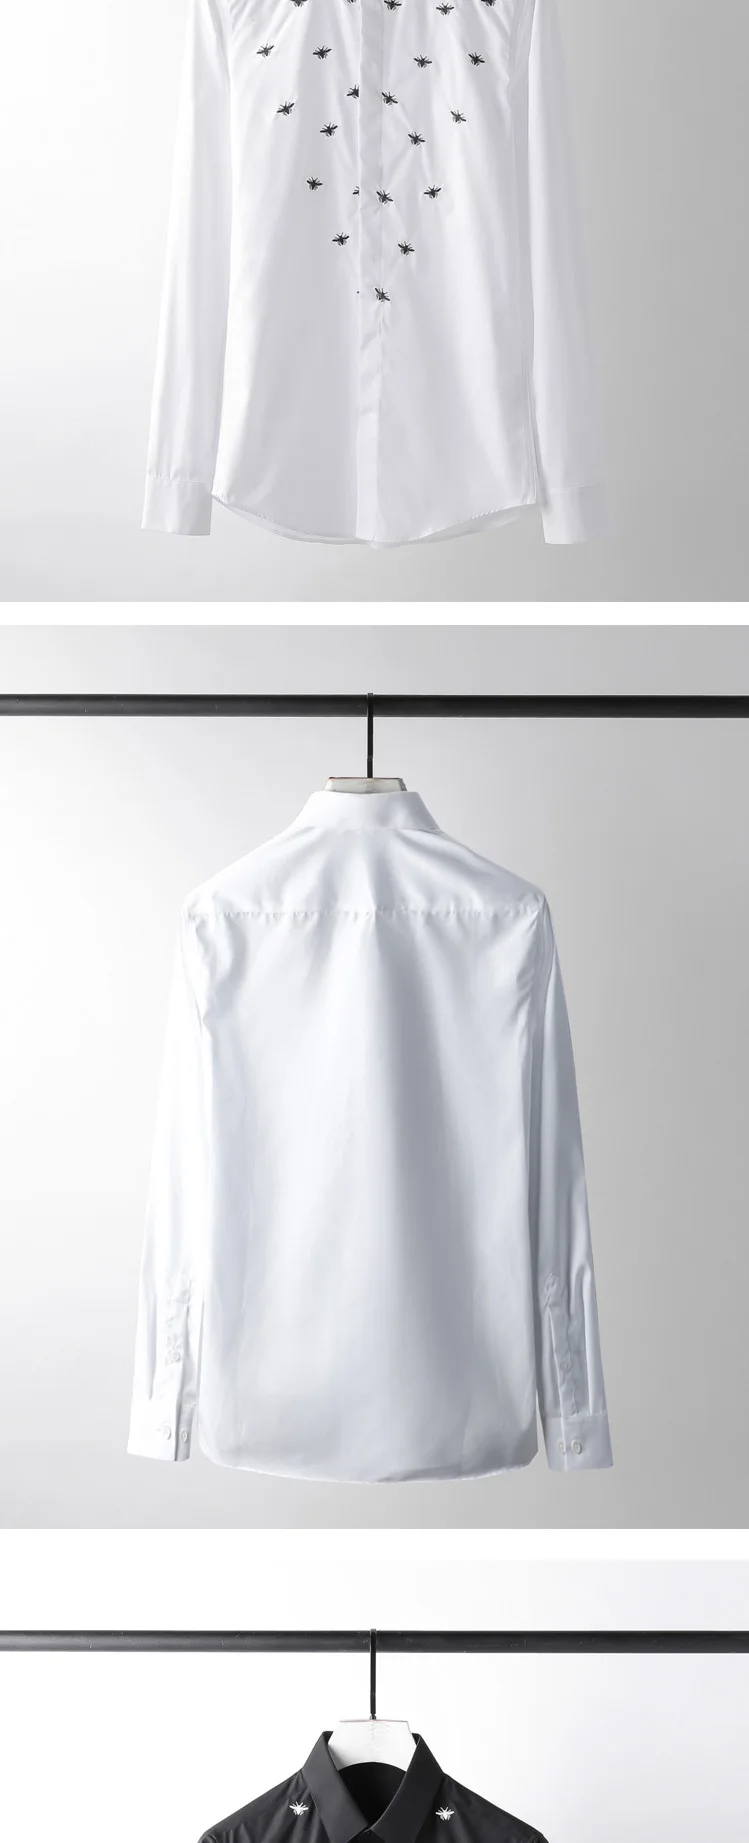 Мода пчелы вышивка рубашки для мужчин 2019 с длинным рукавом повседневное тонкий Camisas отложным воротником 80% хлопок бизнес мужской рубашк